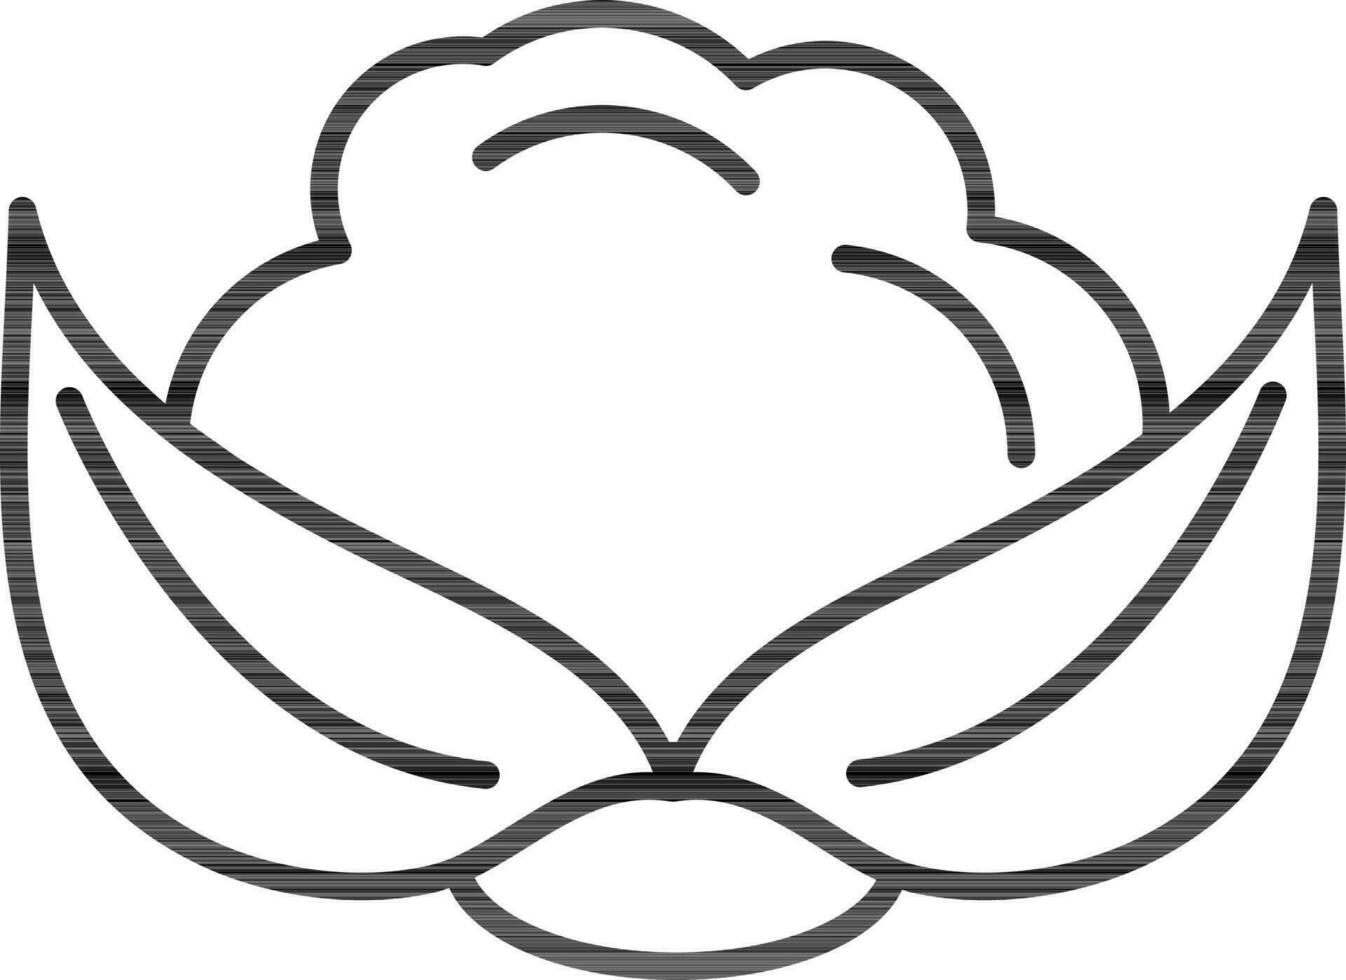 Cauliflower icon in black line art. vector